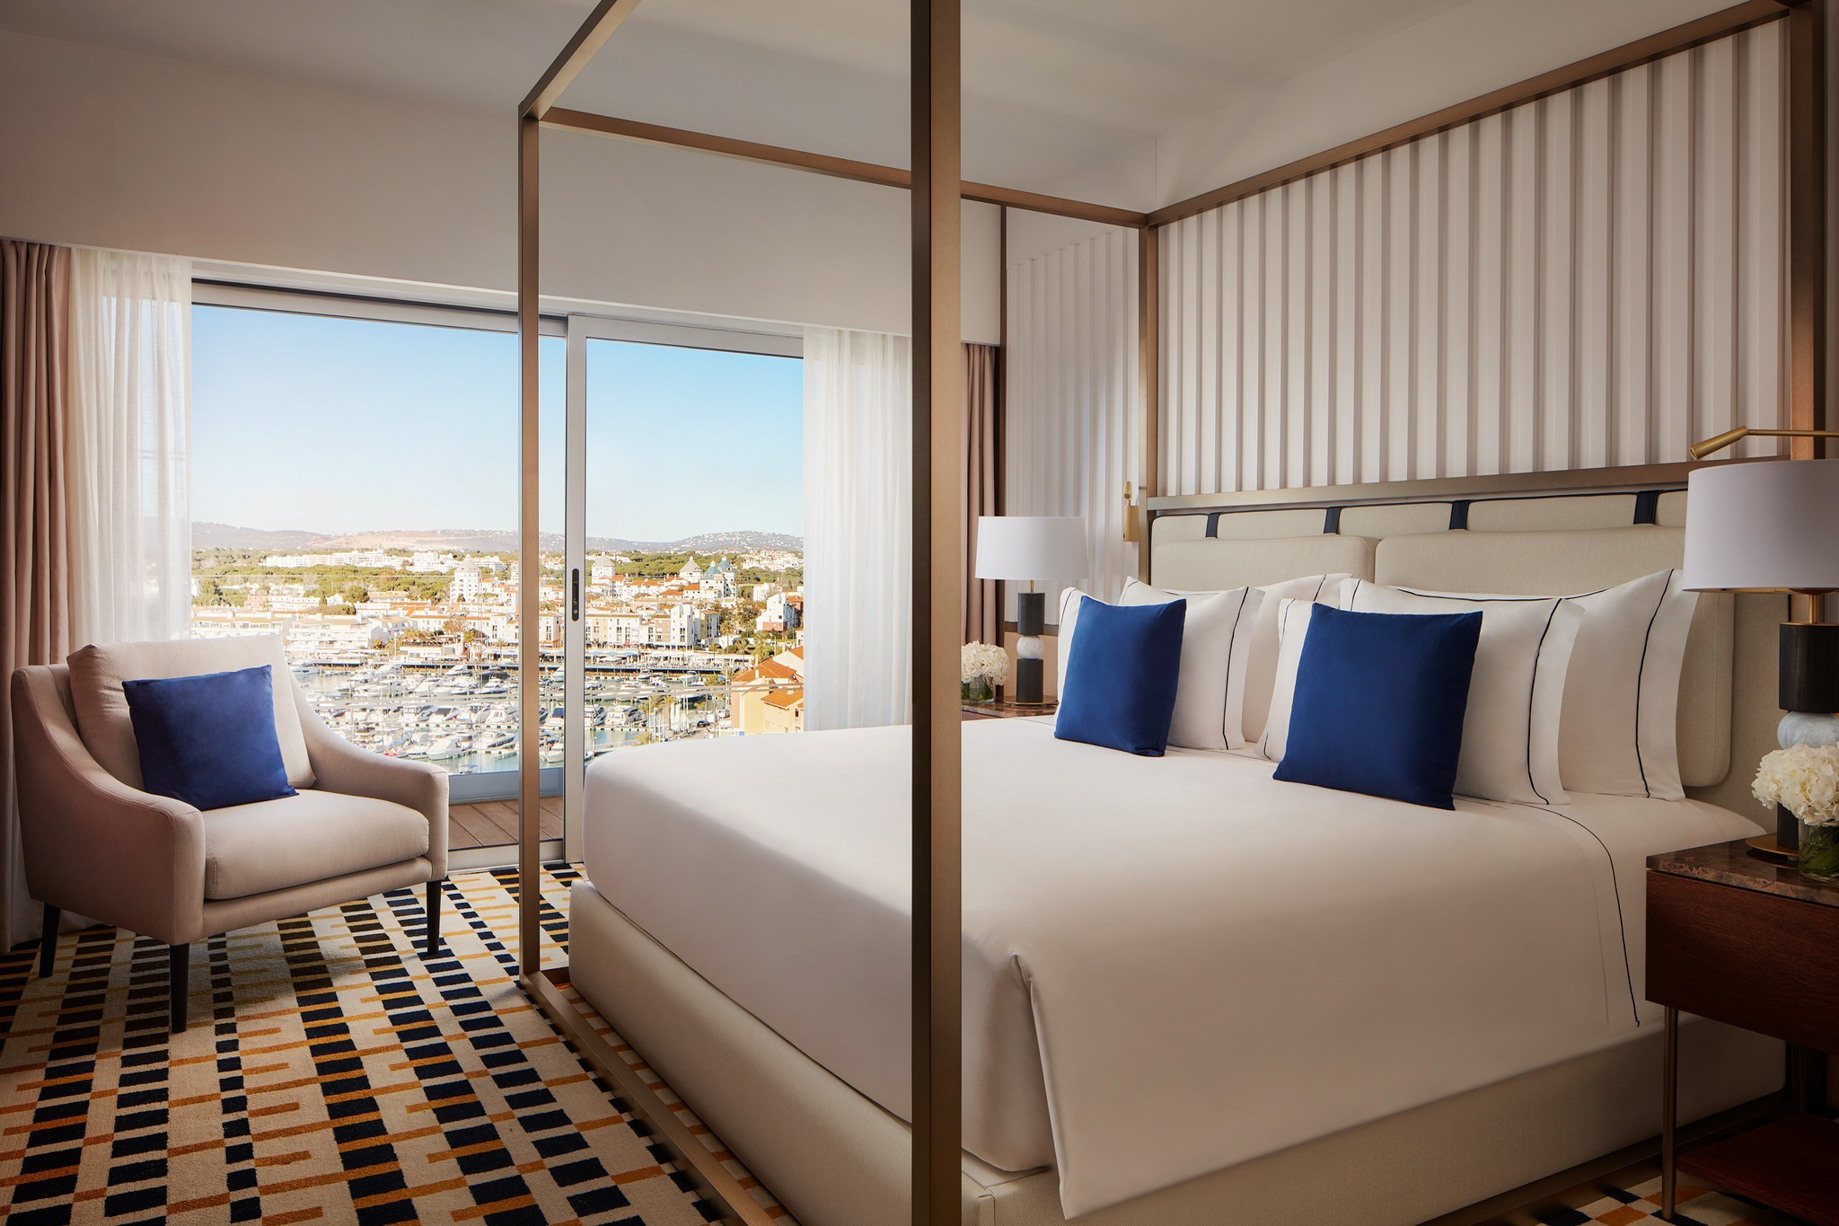 Tivoli Marina Vilamoura Algarve Resort – Portugal – Presidential Suite